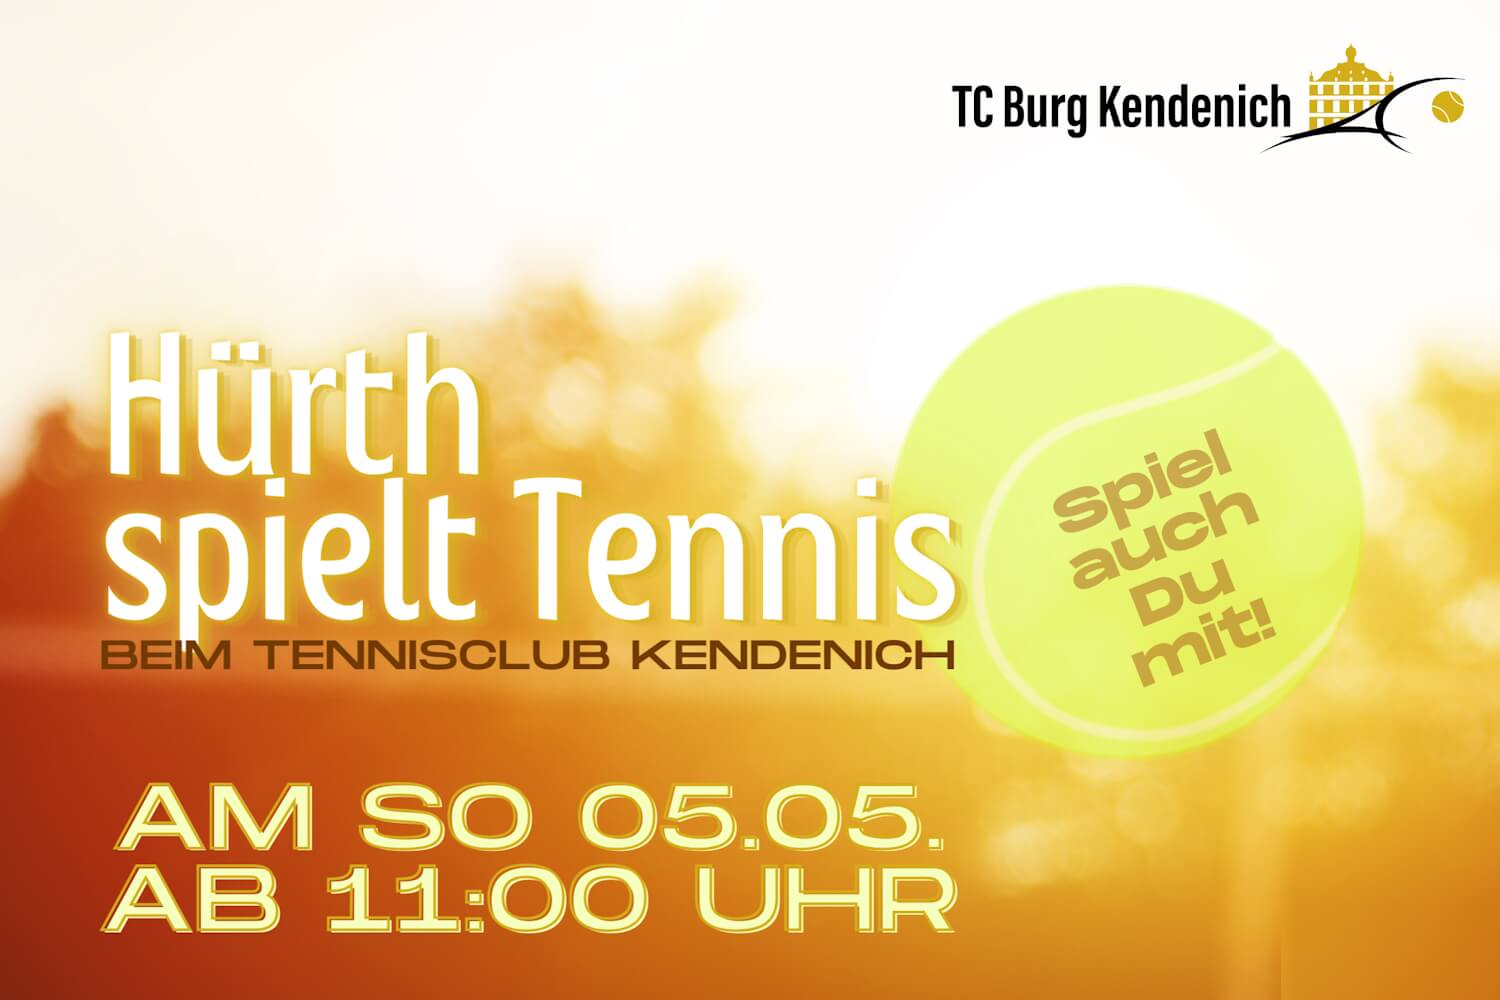 Mehr über den Artikel erfahren Tag der offenen Tür beim TC Burg: Hürth spielt Tennis